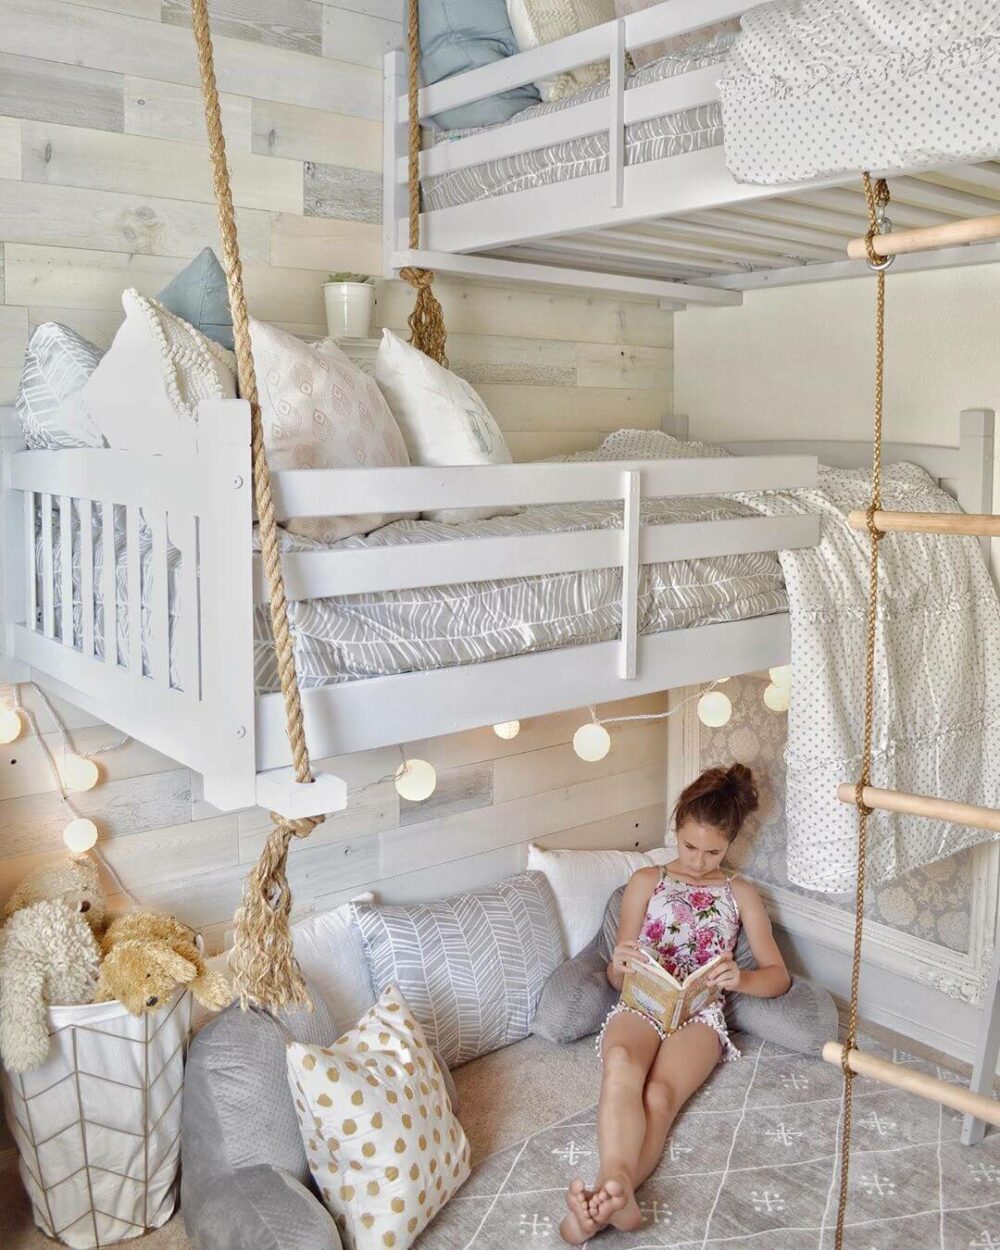 loft bed ideas for tweens